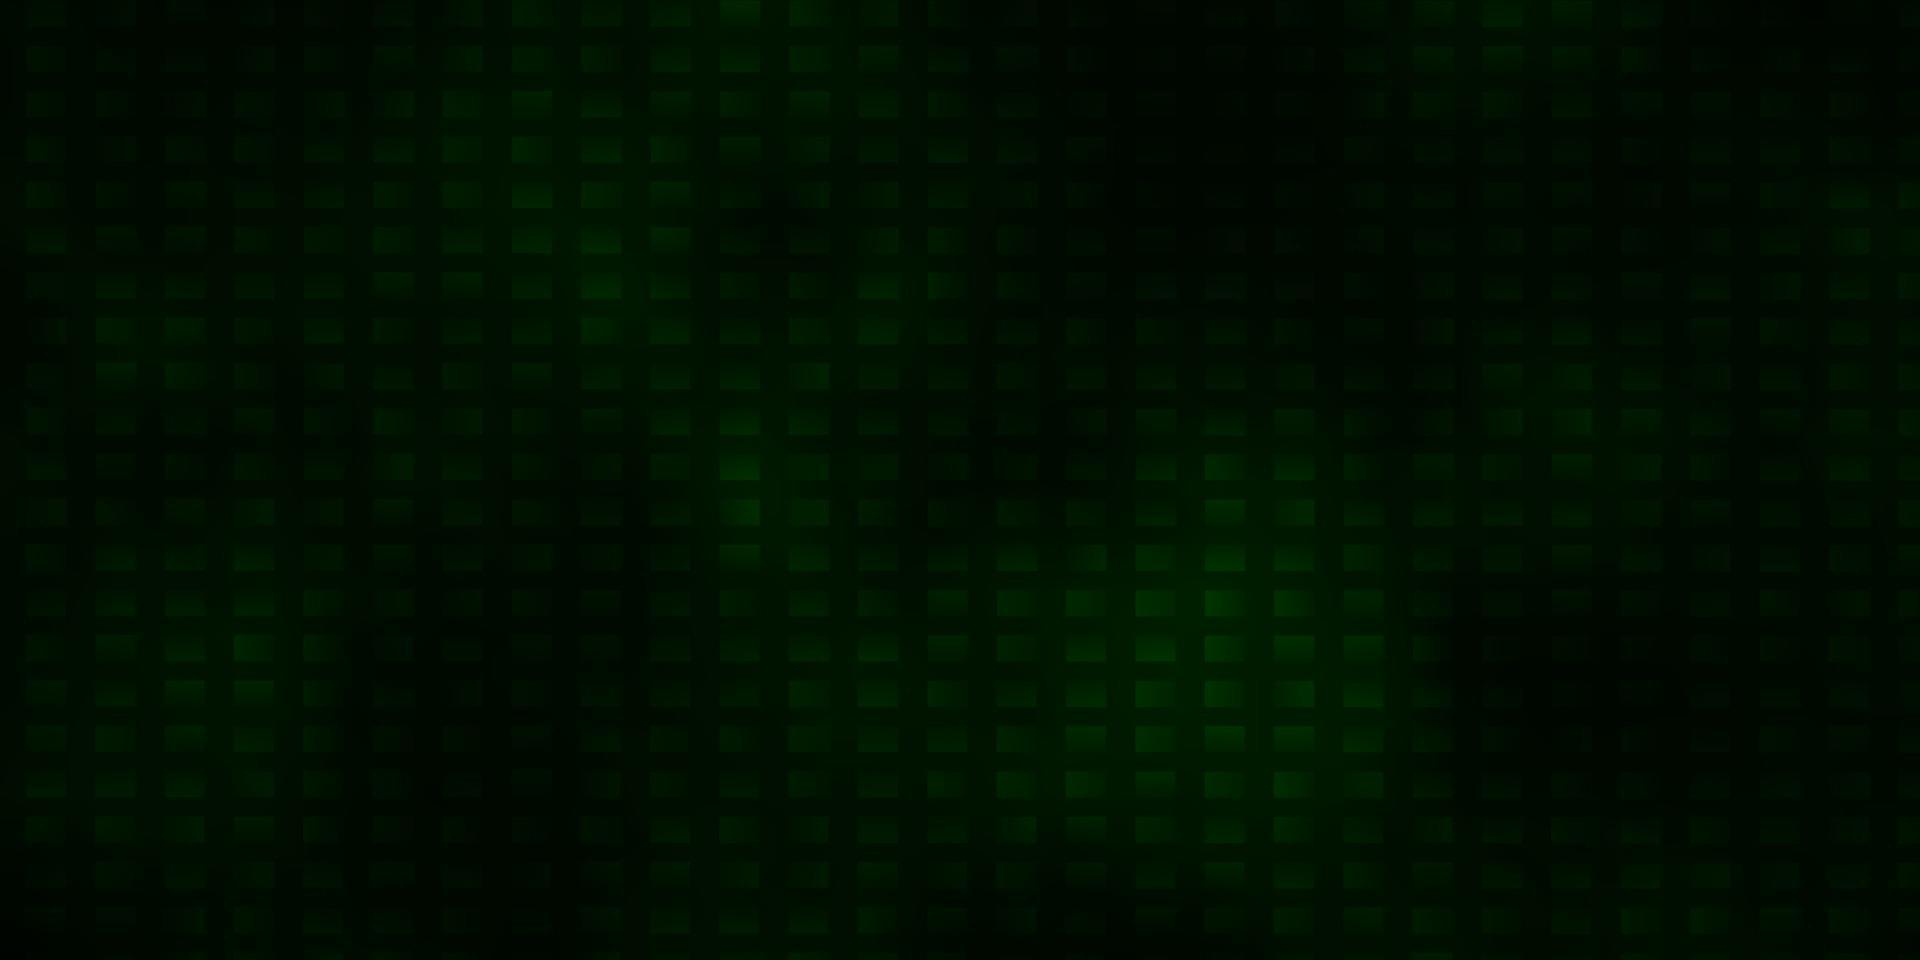 diseño de vector verde oscuro con líneas, rectángulos.